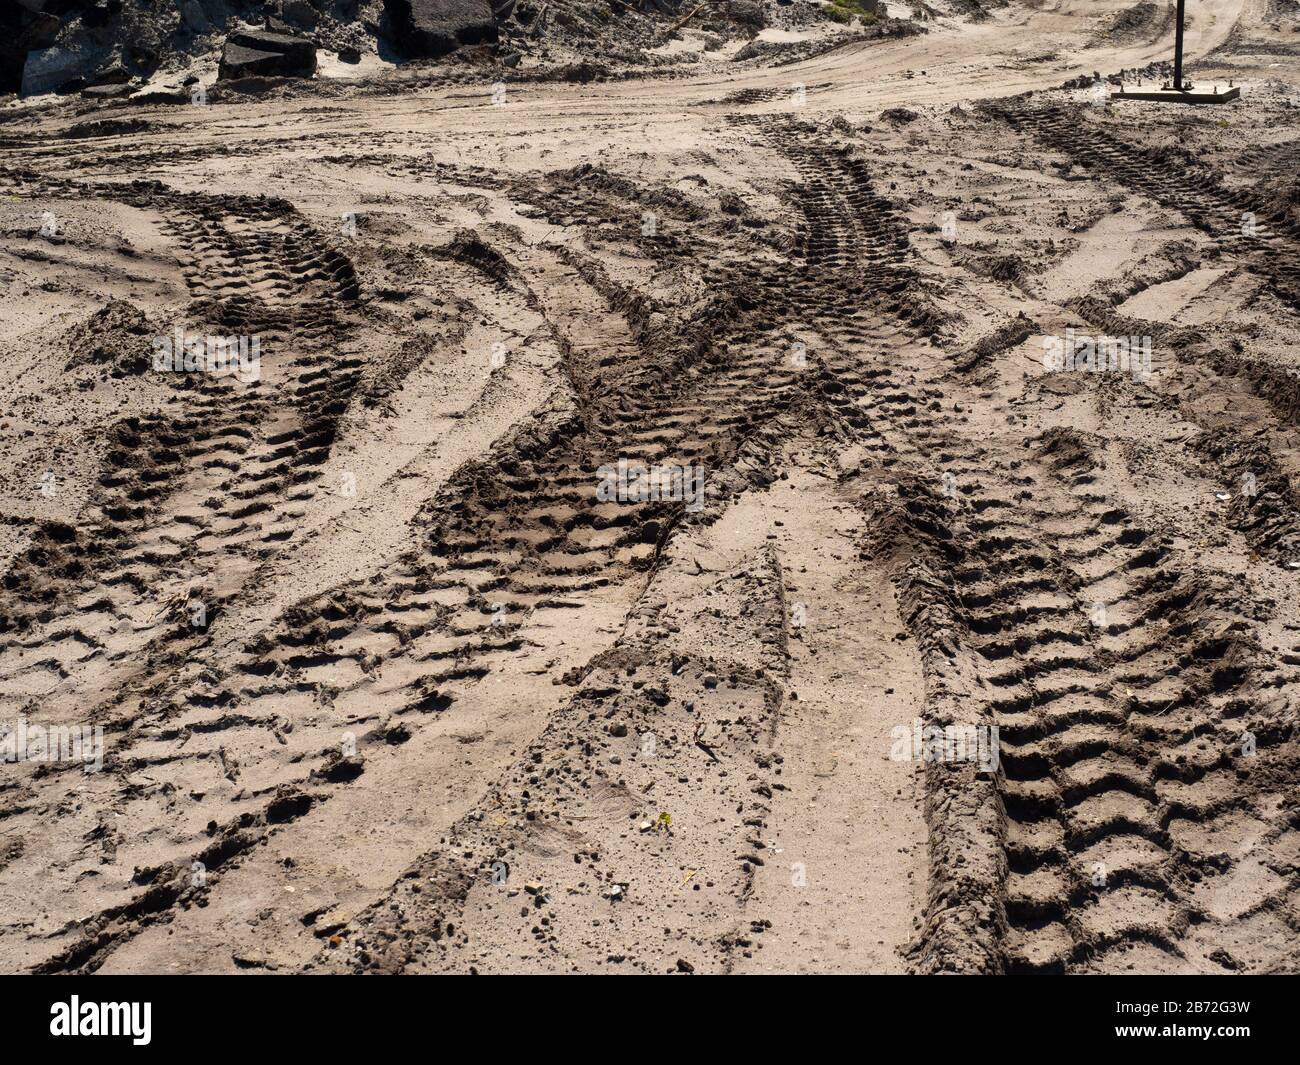 Équipement lourd chenilles de pneus dans le sable sur le site de démolition de route, grandes voies se chevauchant, tas de chaussées de route Rubble en arrière-plan, vue large Banque D'Images